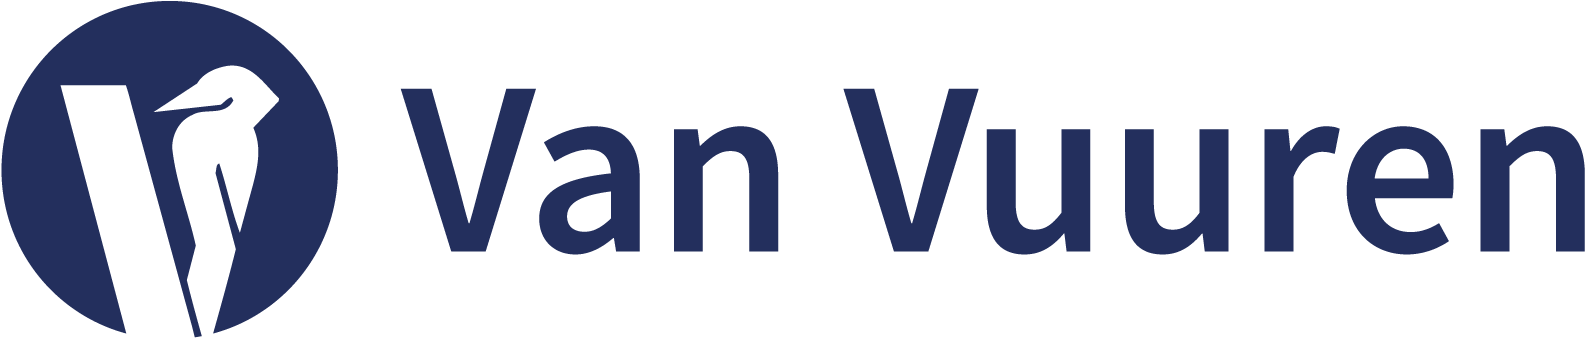 Van Vuuren Grou logo transparant blauw